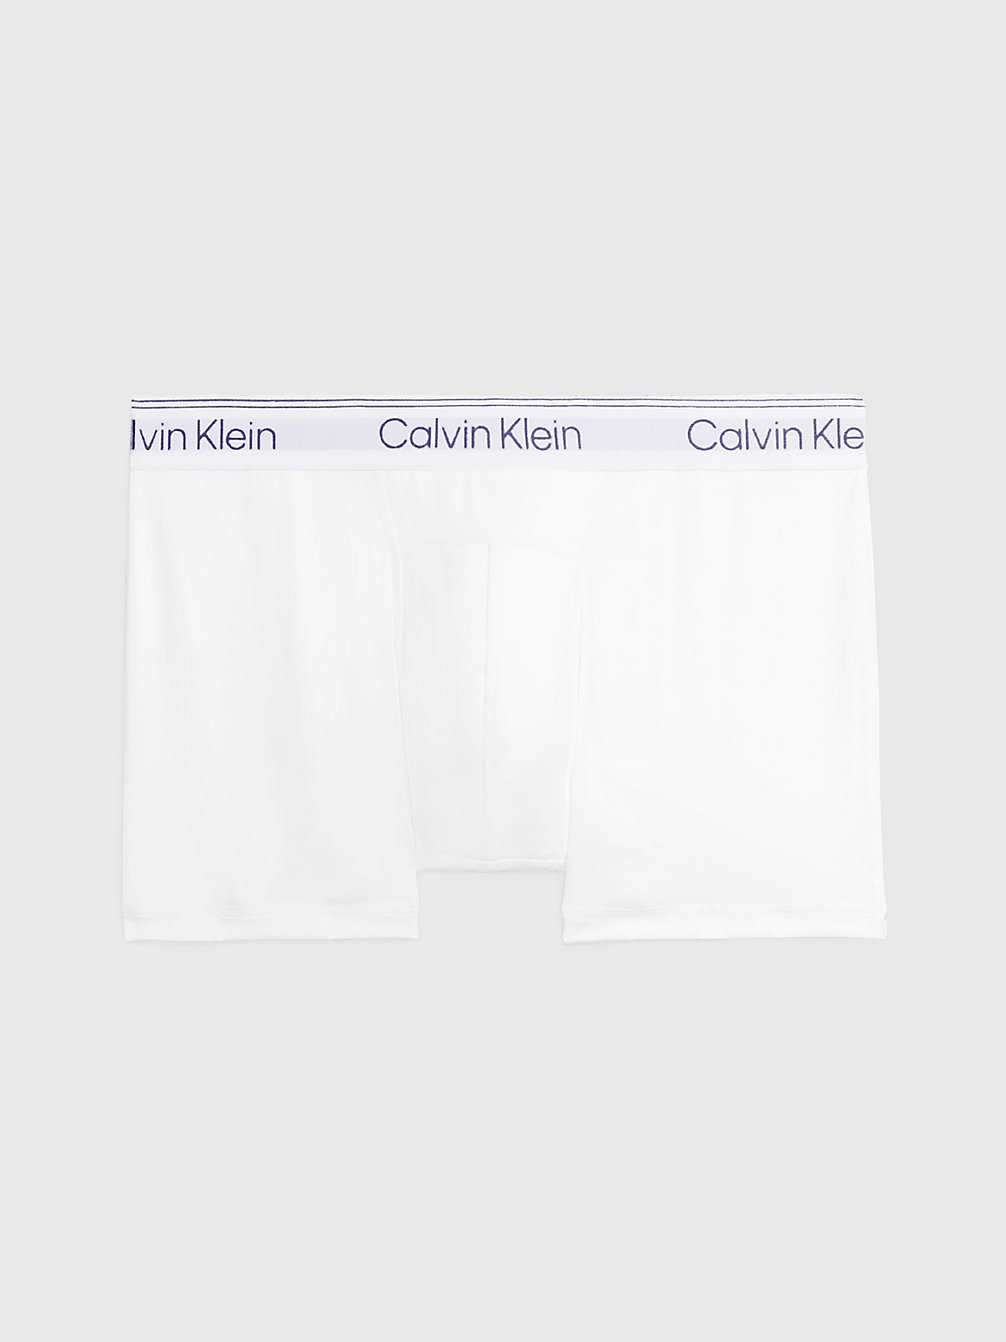 Boxer Aderenti - Athletic Cotton > WHITE > undefined uomo > Calvin Klein